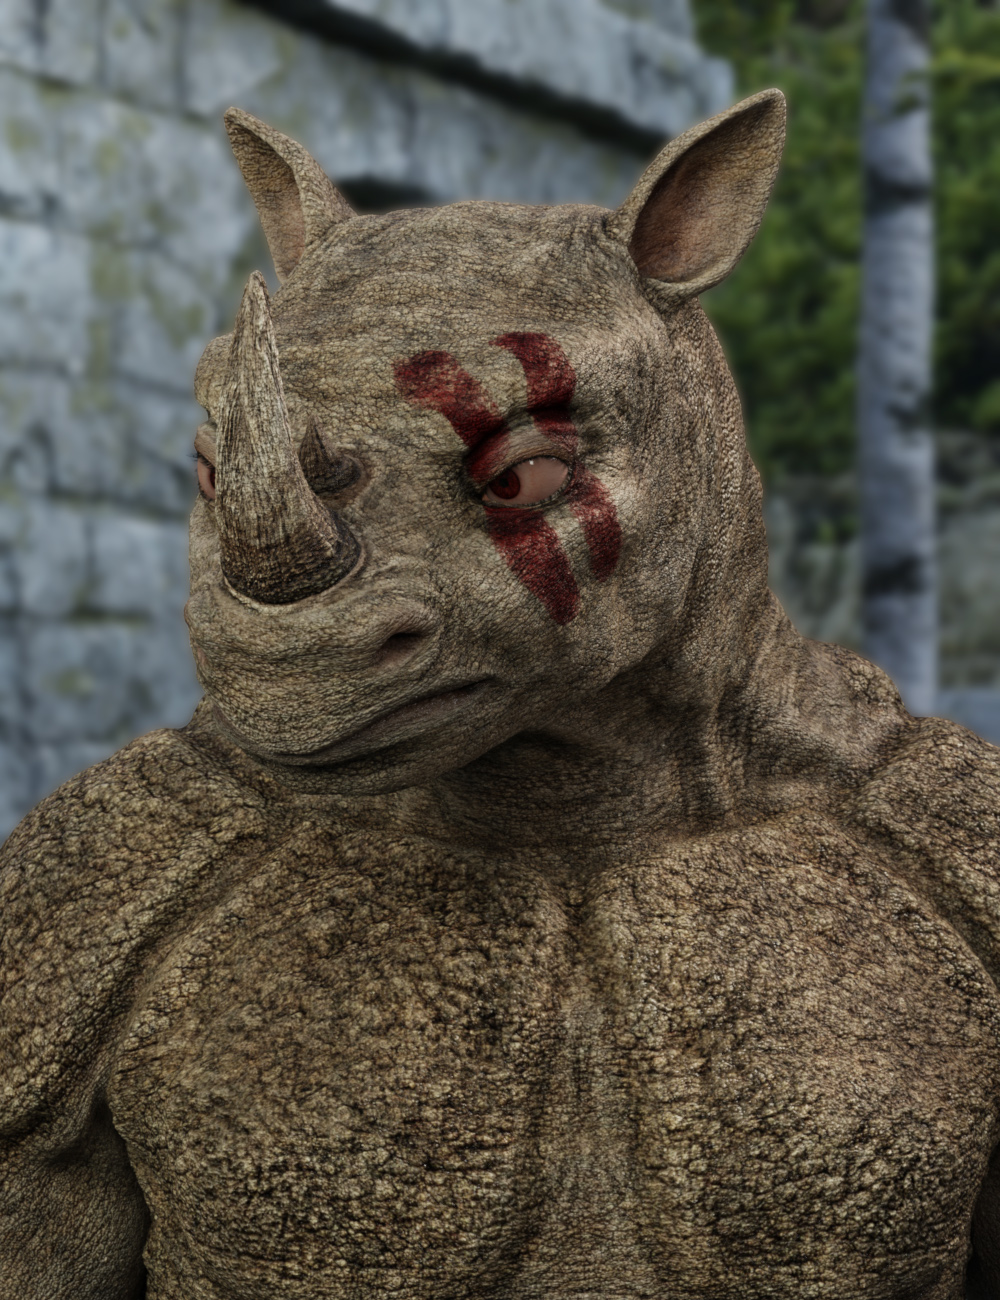 Rhinoculous for Genesis 8.1 Male by: RawArt, 3D Models by Daz 3D